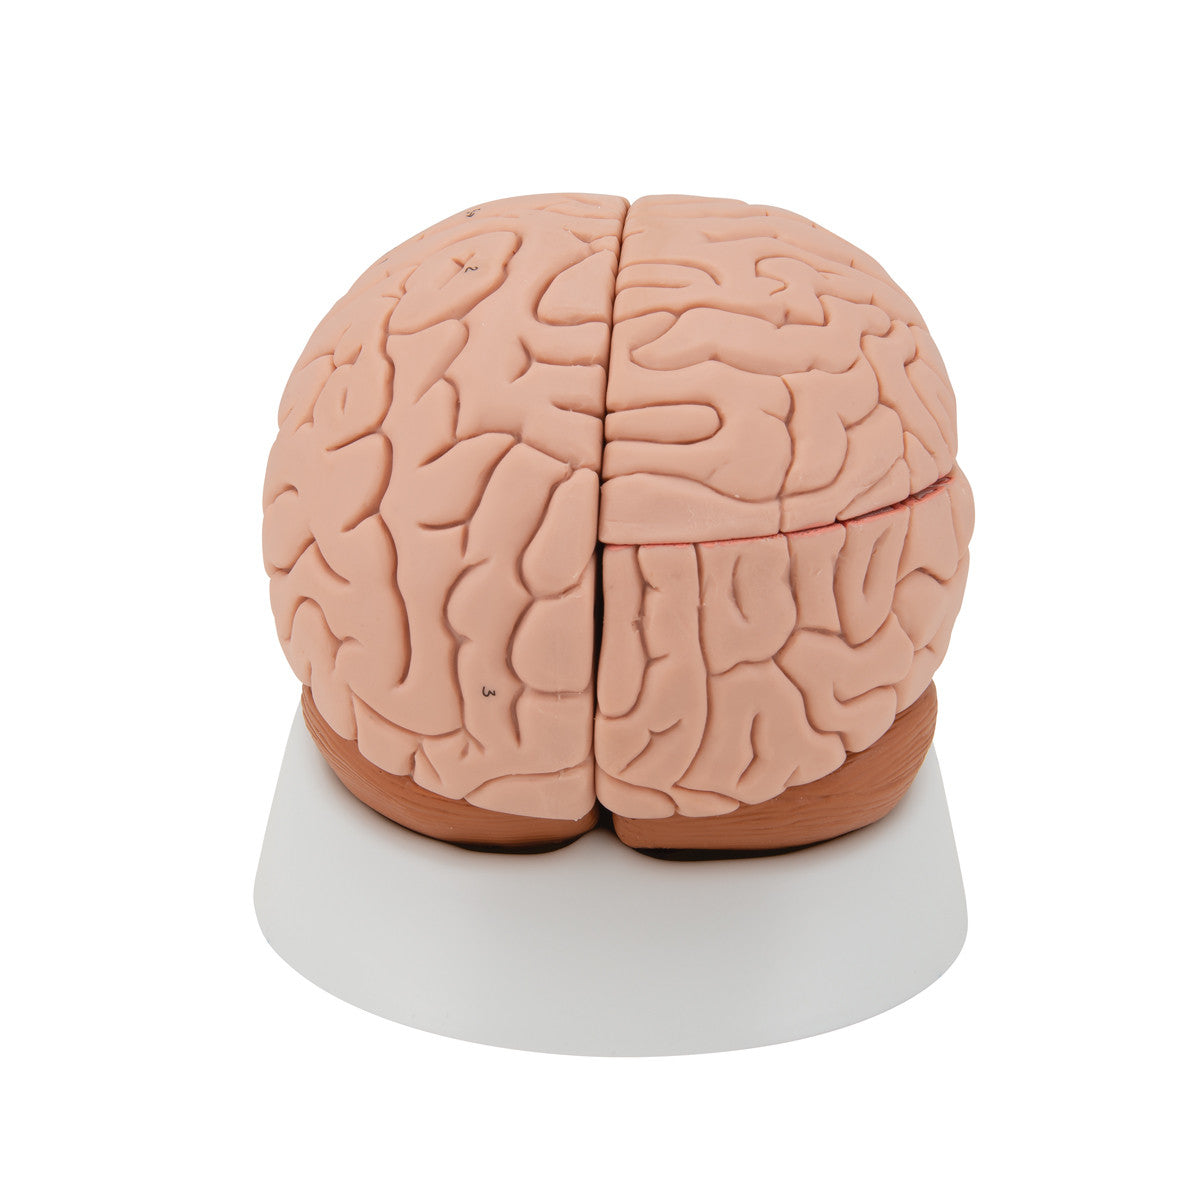 Brain Model, 4 parts | 3B Scientific C16